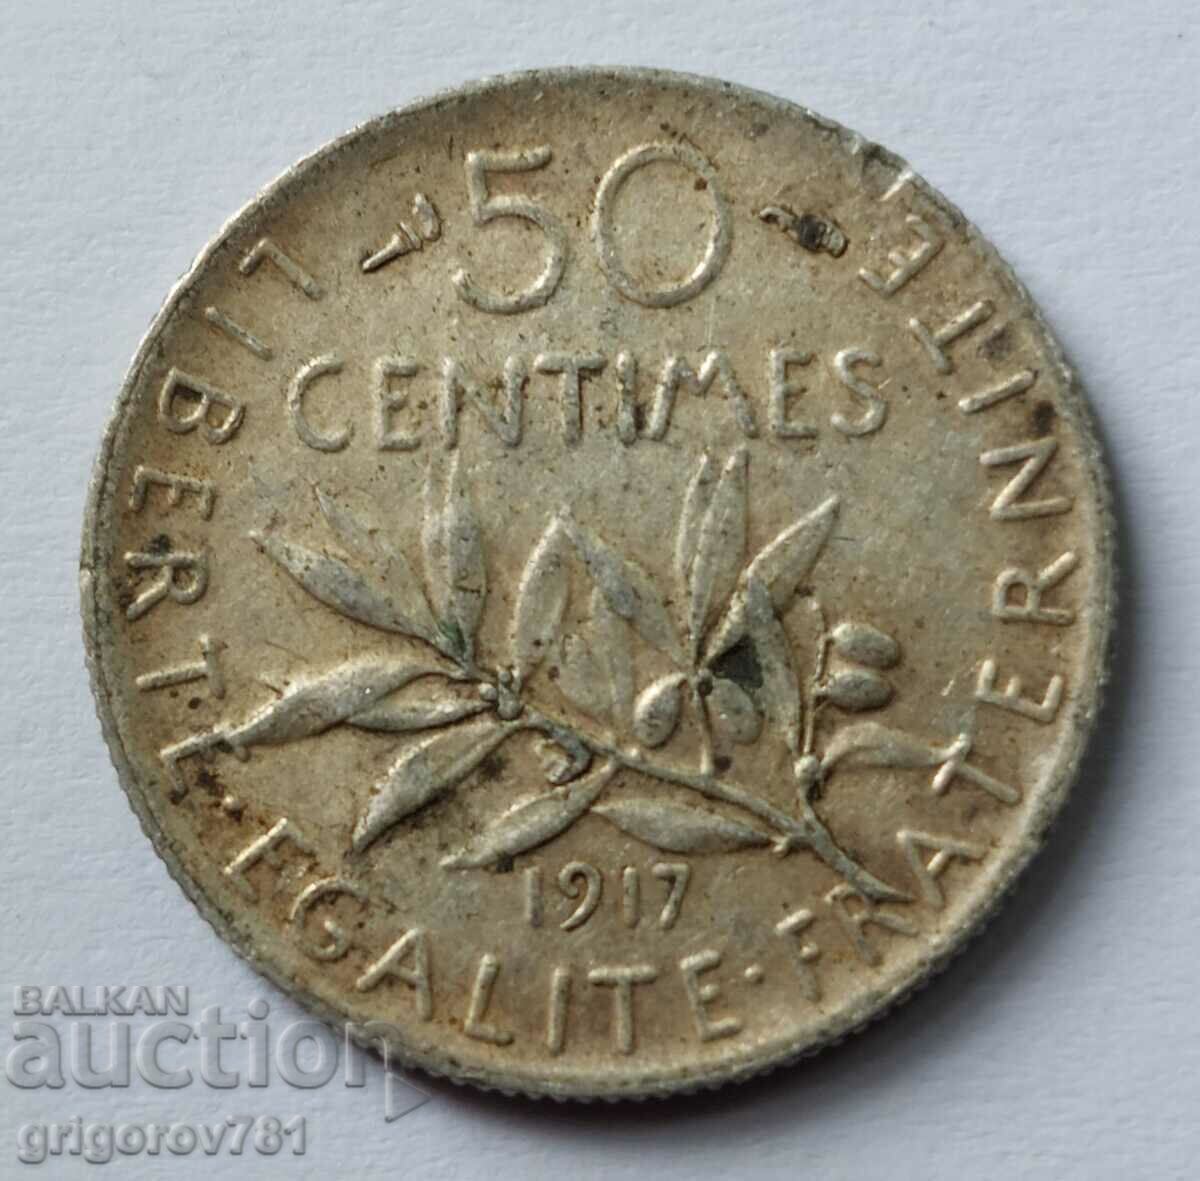 Ασημένιο 50 εκατοστά Γαλλία 1917 - ασημένιο νόμισμα №16